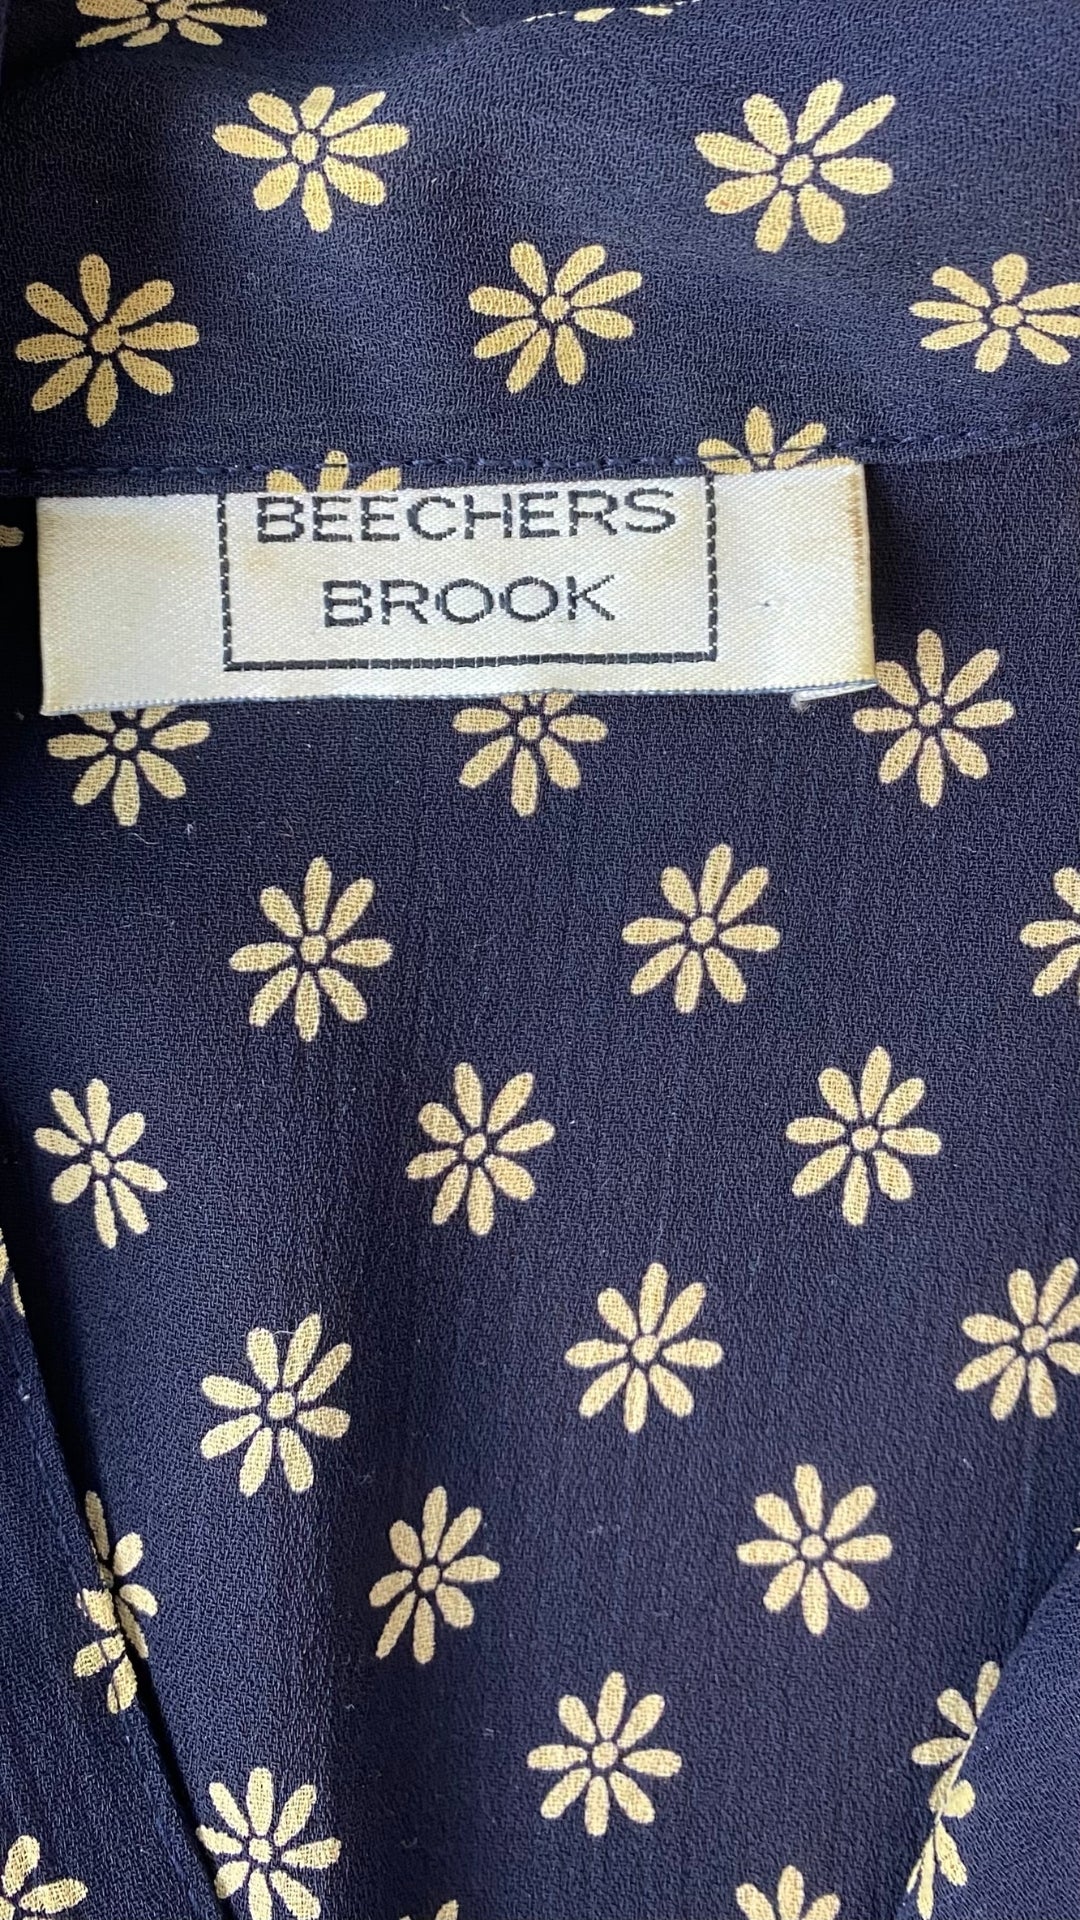 Blouse marine à fleurs vintage Beechers Brook, taille m-l. Vue de l'étiquette de marque.